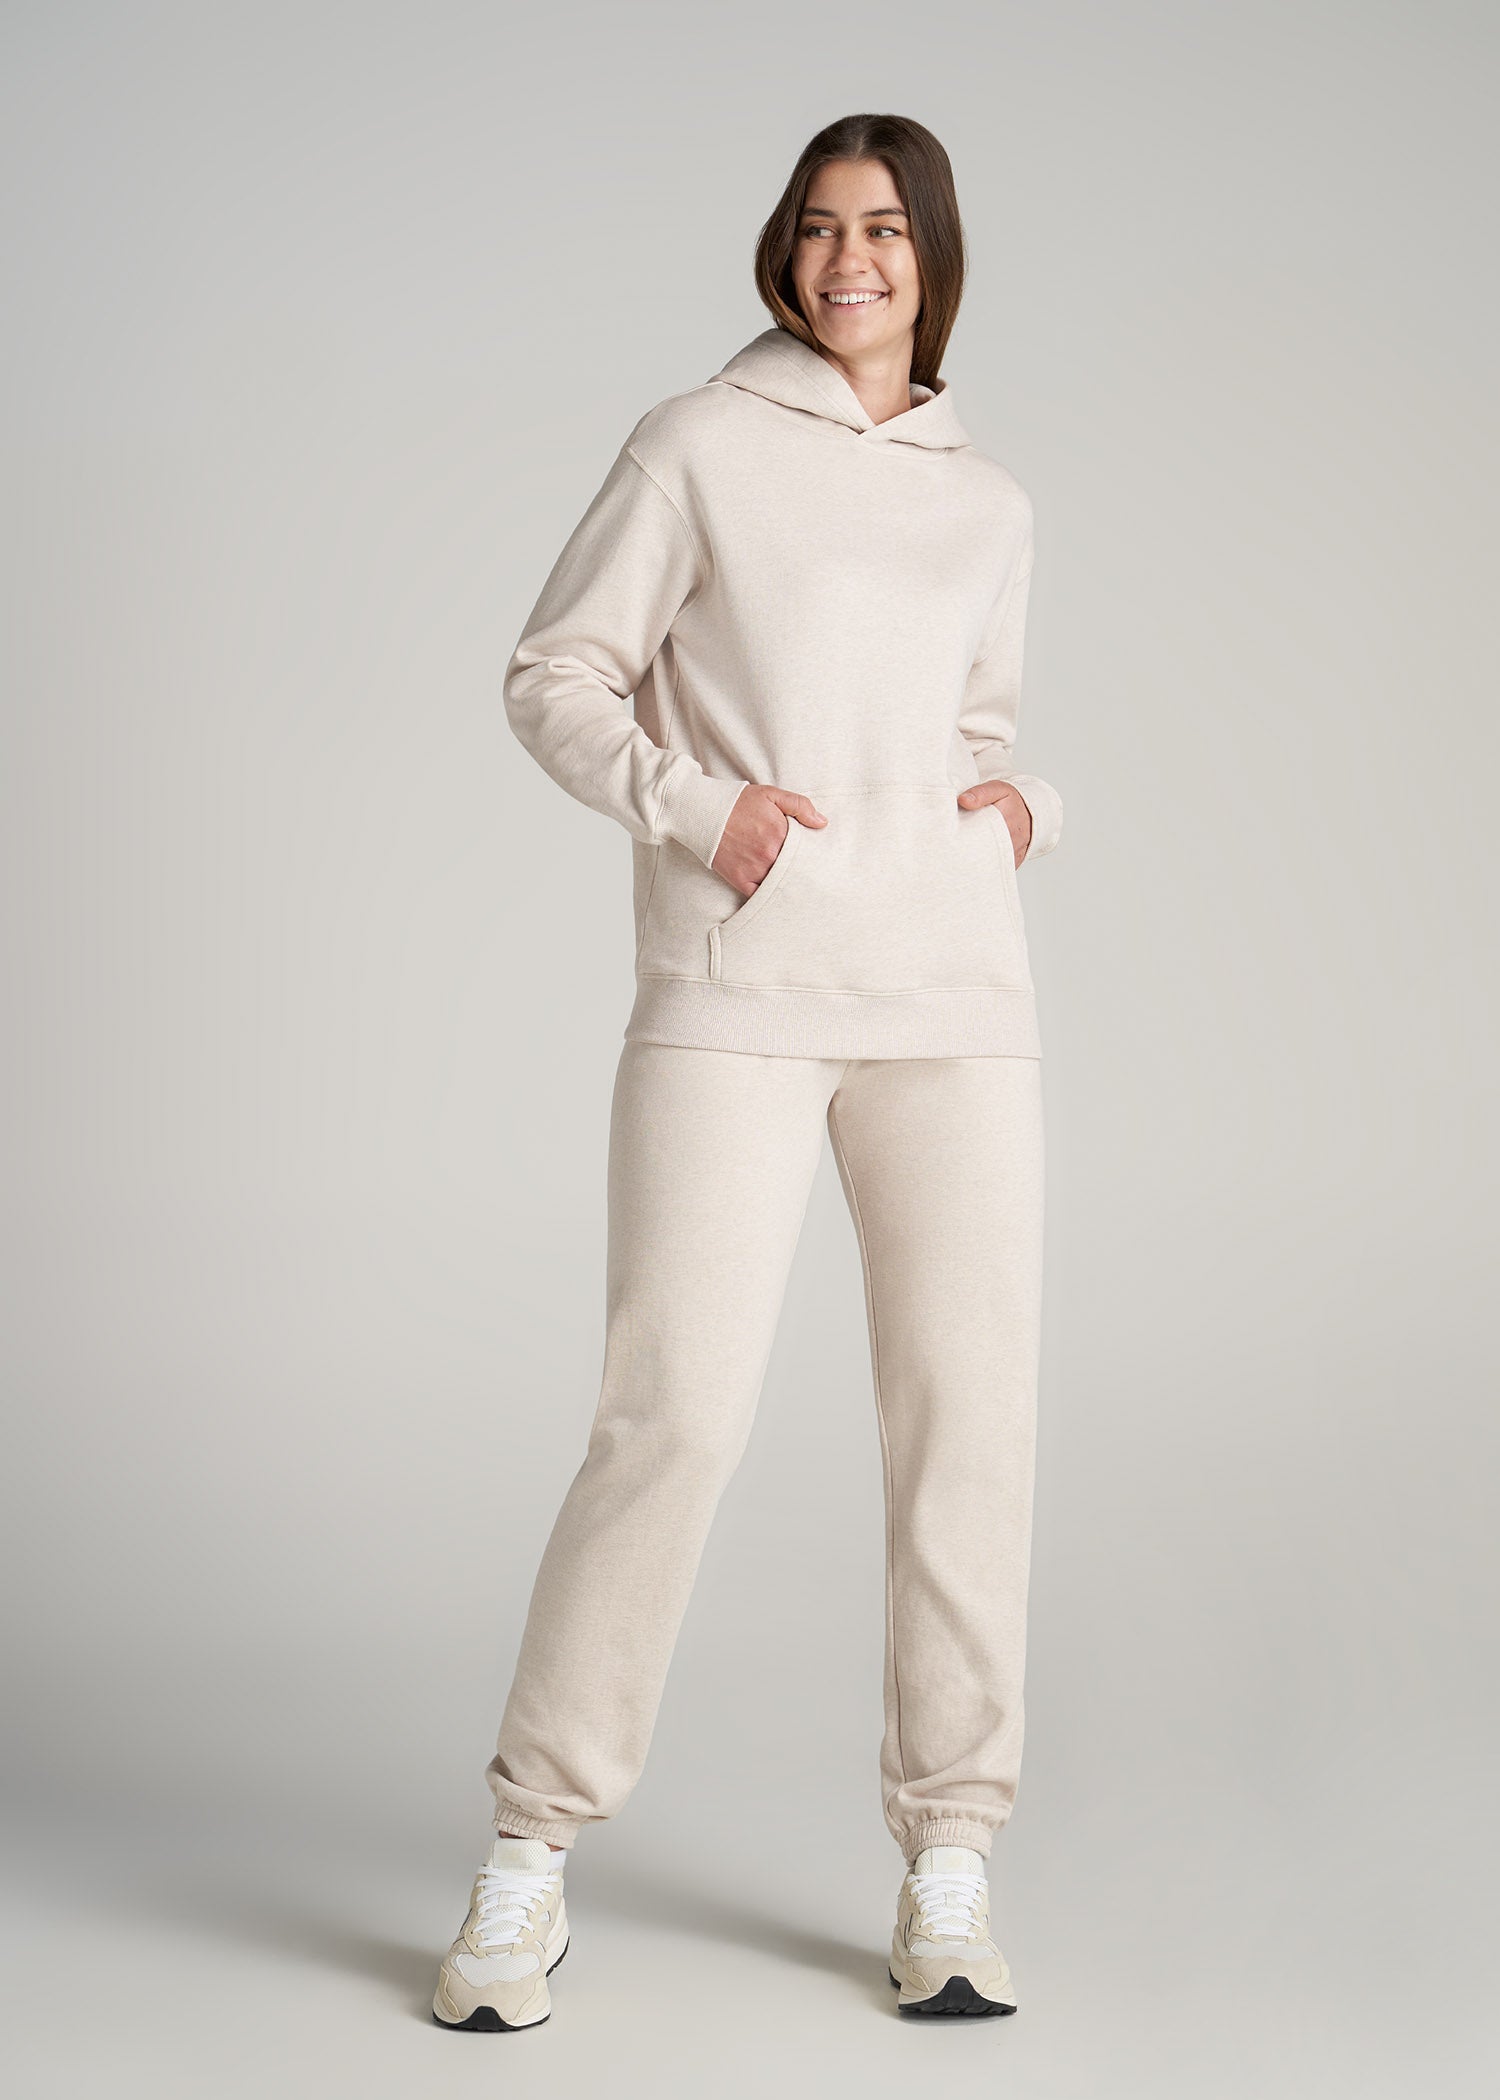 Wearever Fleece Open-Bottom Sweatpants for Tall Women Midnight